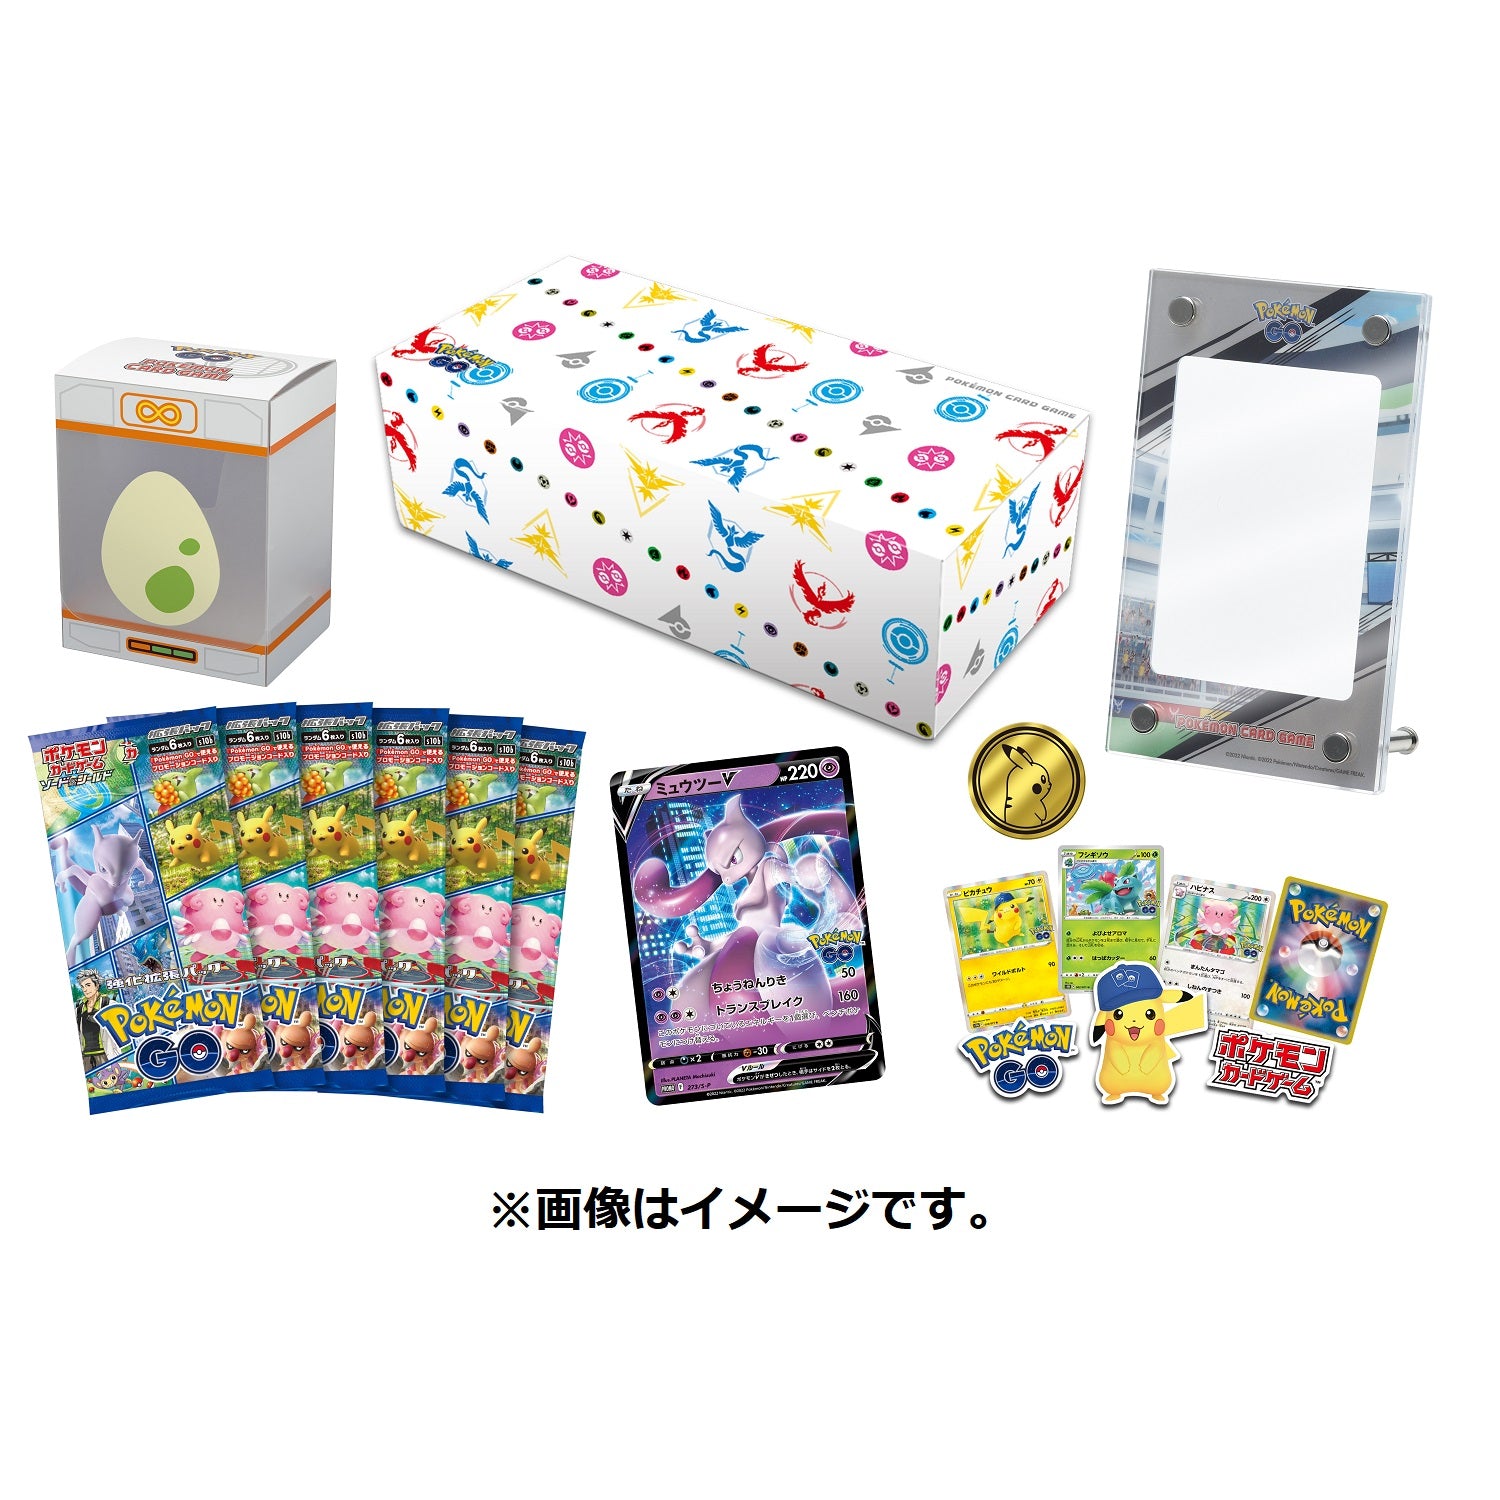 Mewtwo V 273/S-P Pokémon GO PROMO - Pokemon Card Japanese